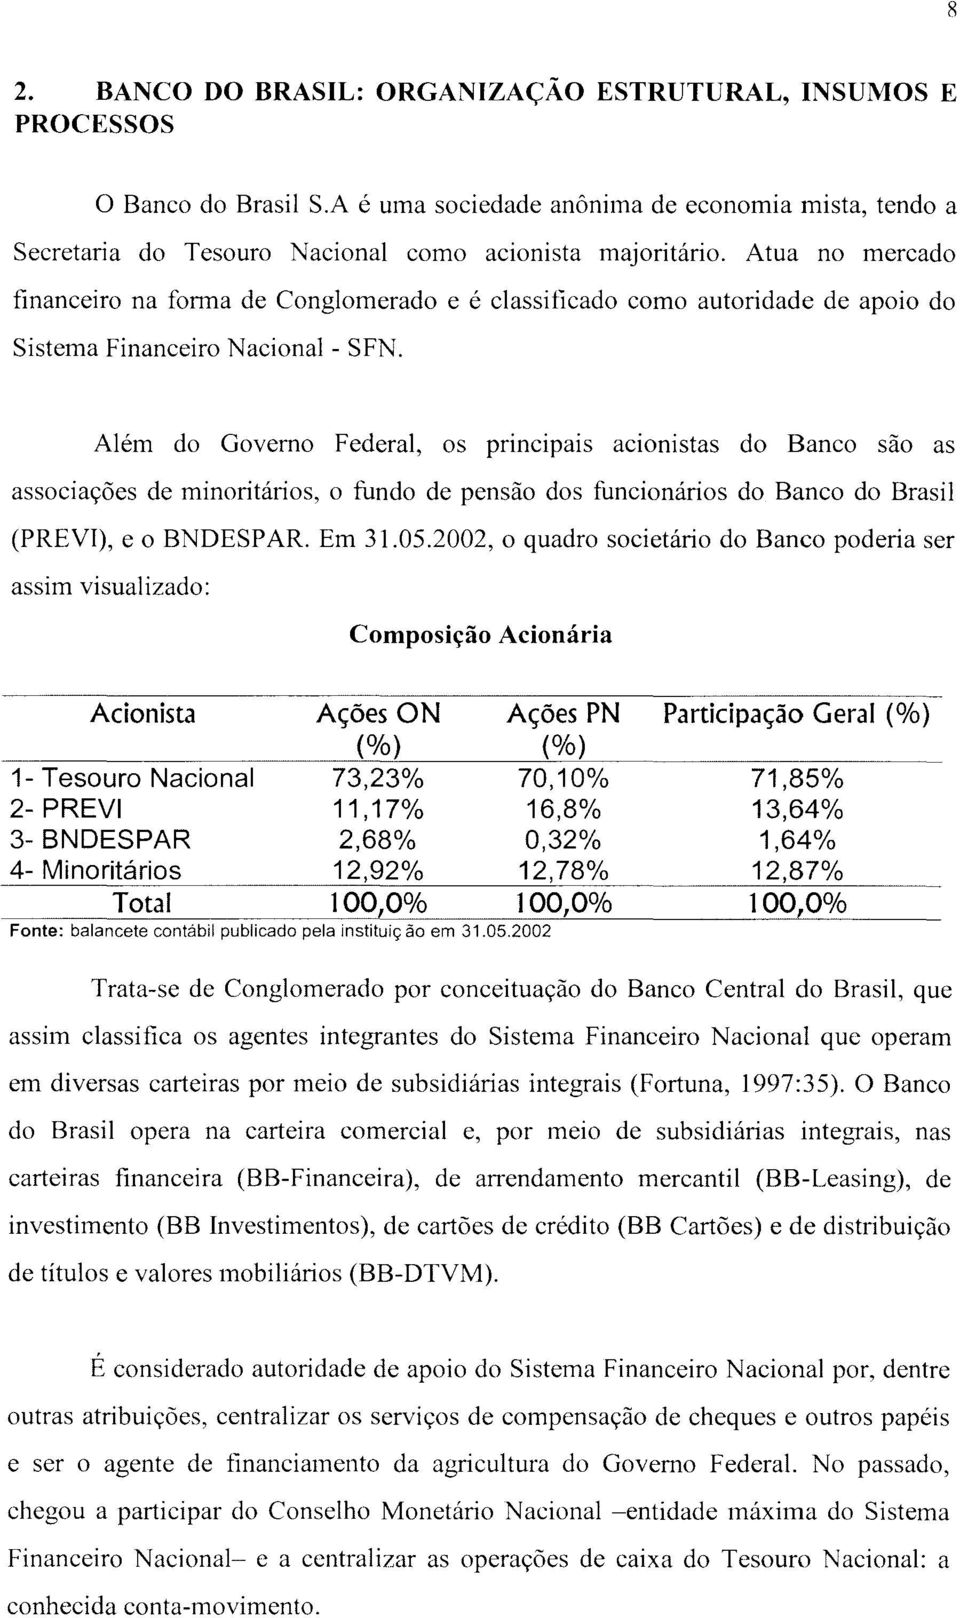 Além do Governo Federal, os principais acionistas do Banco são as associações de minoritários, o fundo de pensão dos funcionários do Banco do Brasil (PREVI), e o BNDESPAR. Em 31.05.